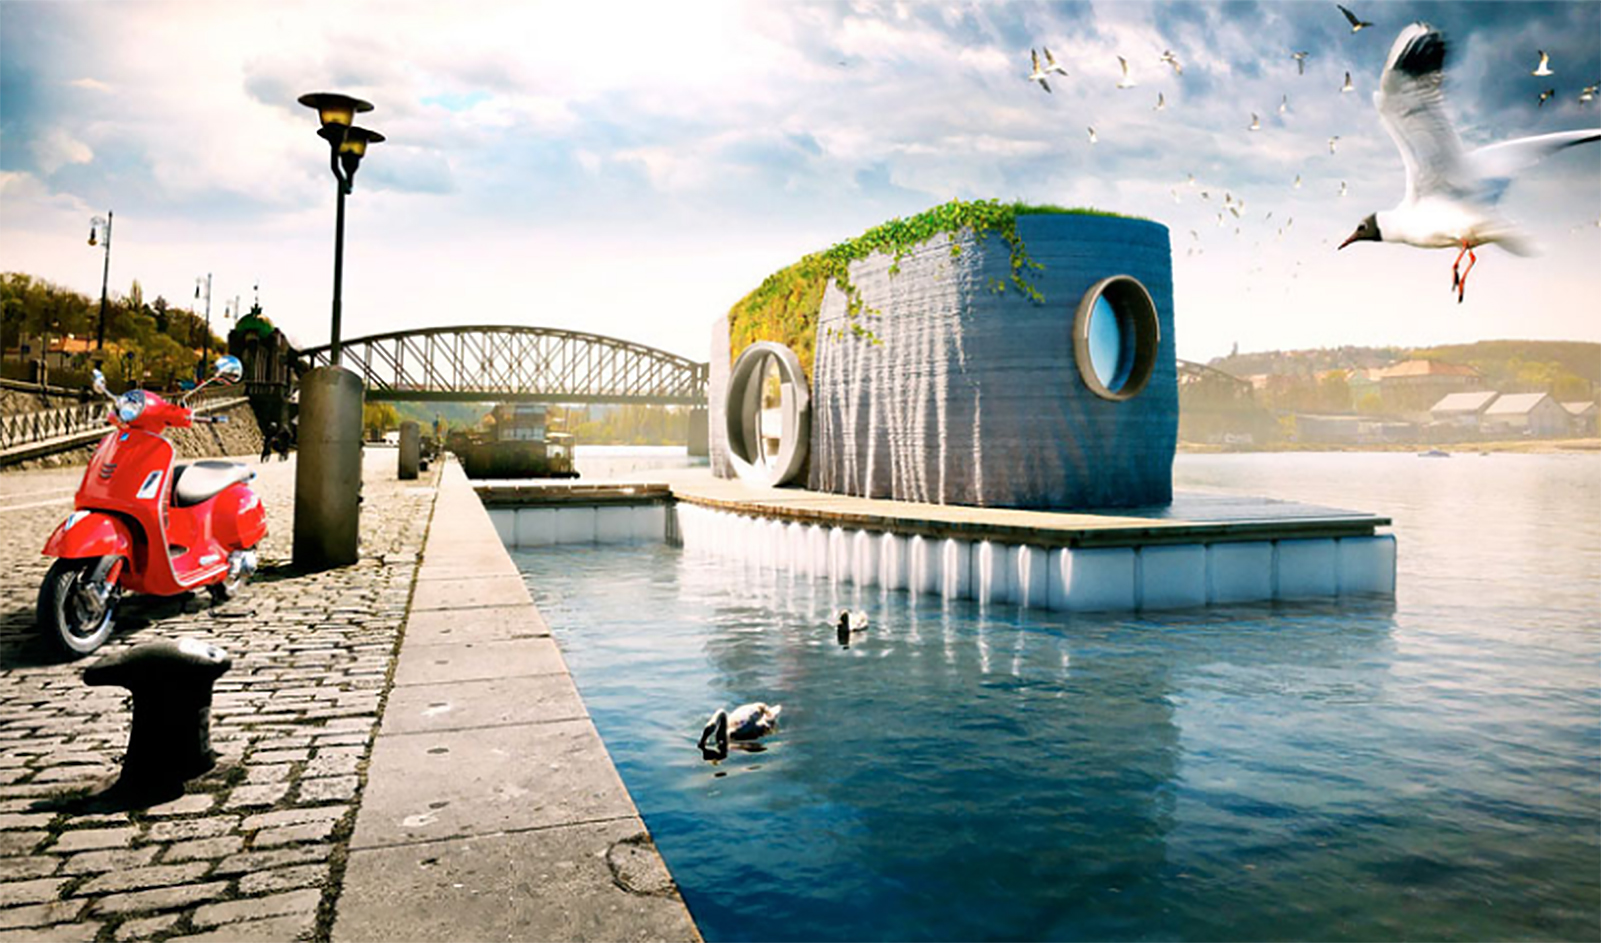 Le prototype de la maison flottante, imprimée en 3D, sera exposée, cet été, à Prague sur la rivière Vltava. © Michal Trpak, studio Scoolpt 